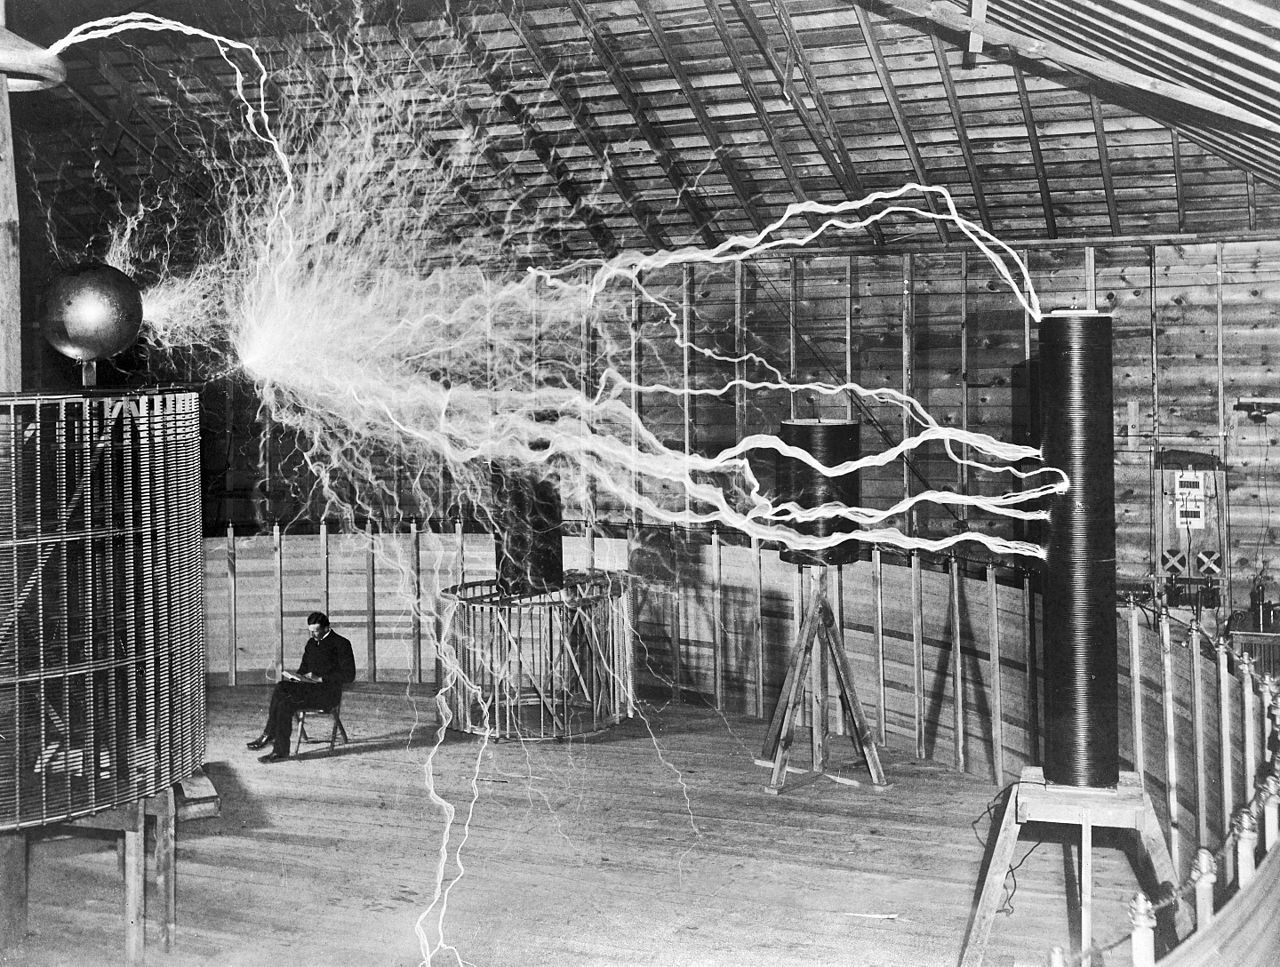 Oto potencjalny Nikola Tesla XXI wieku. Jego patenty mogą przesądzić o losach świata